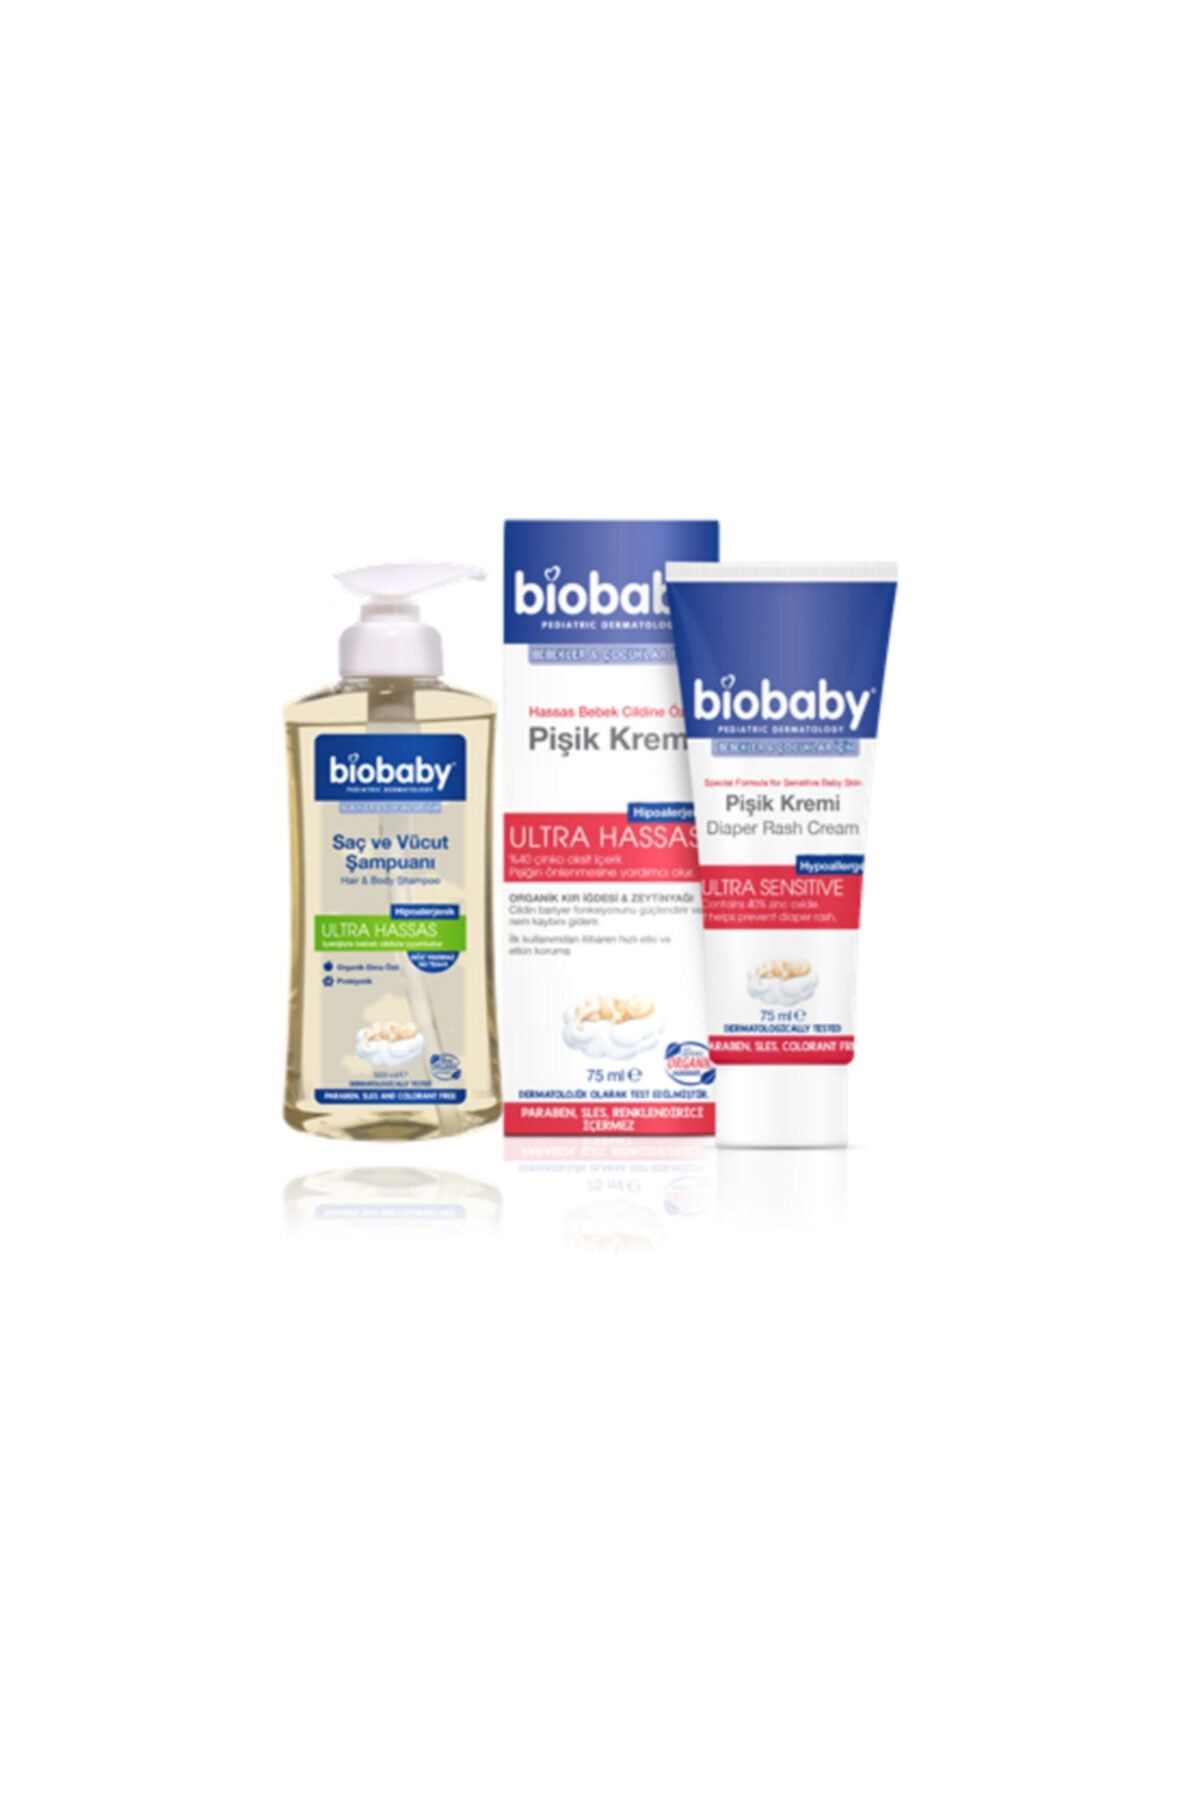 Biobaby Hassas Bebek Cildine Özel Pişik Kremi 75-ml + Bıobaby Saç Ve Vücut Şampuanı 500 ml Set